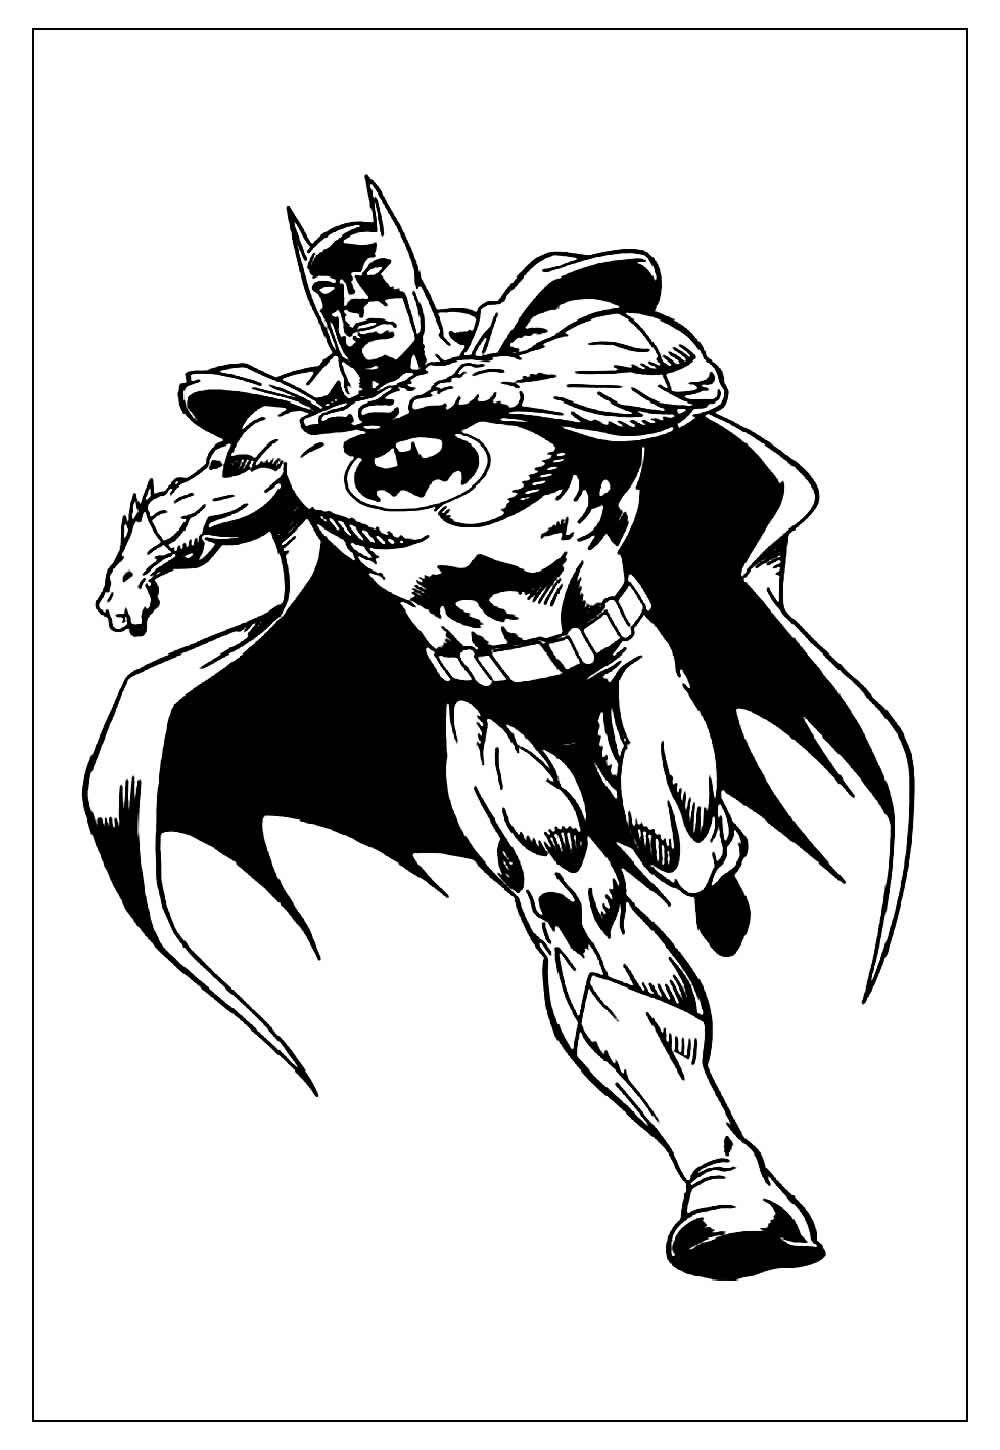 Imagem do Batman para pintar e colorir